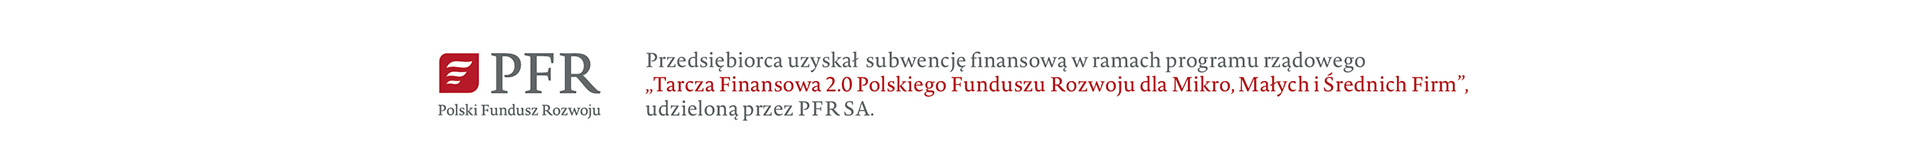 pfr polski fundusz rozwoju